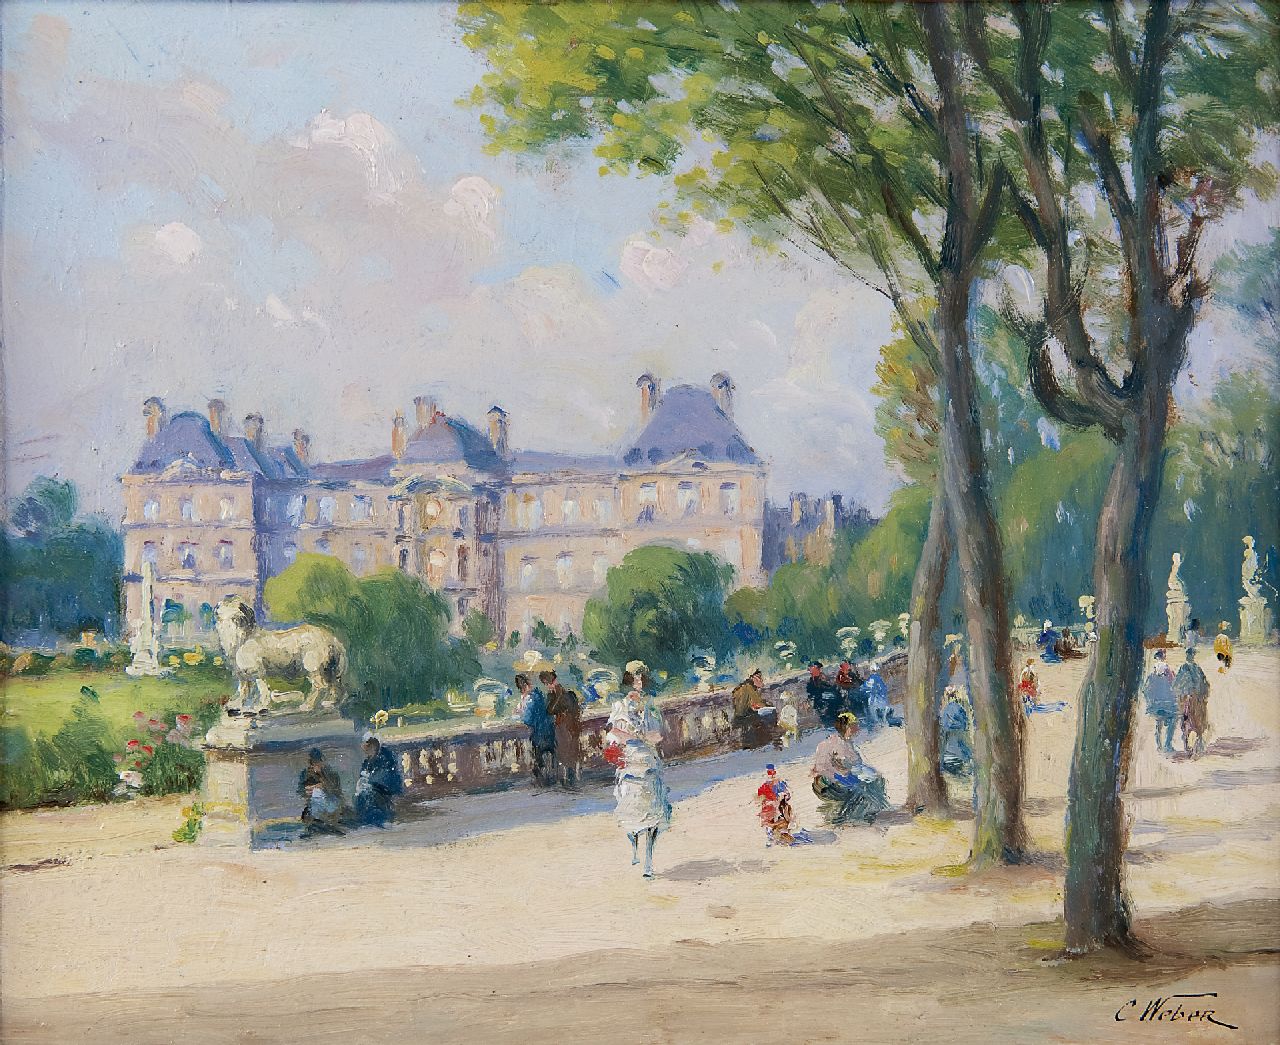 Weber | Jardin du Luxembourg, Paris, oil on painter's board, 21.9 x 26.8 cm, signed l.r.